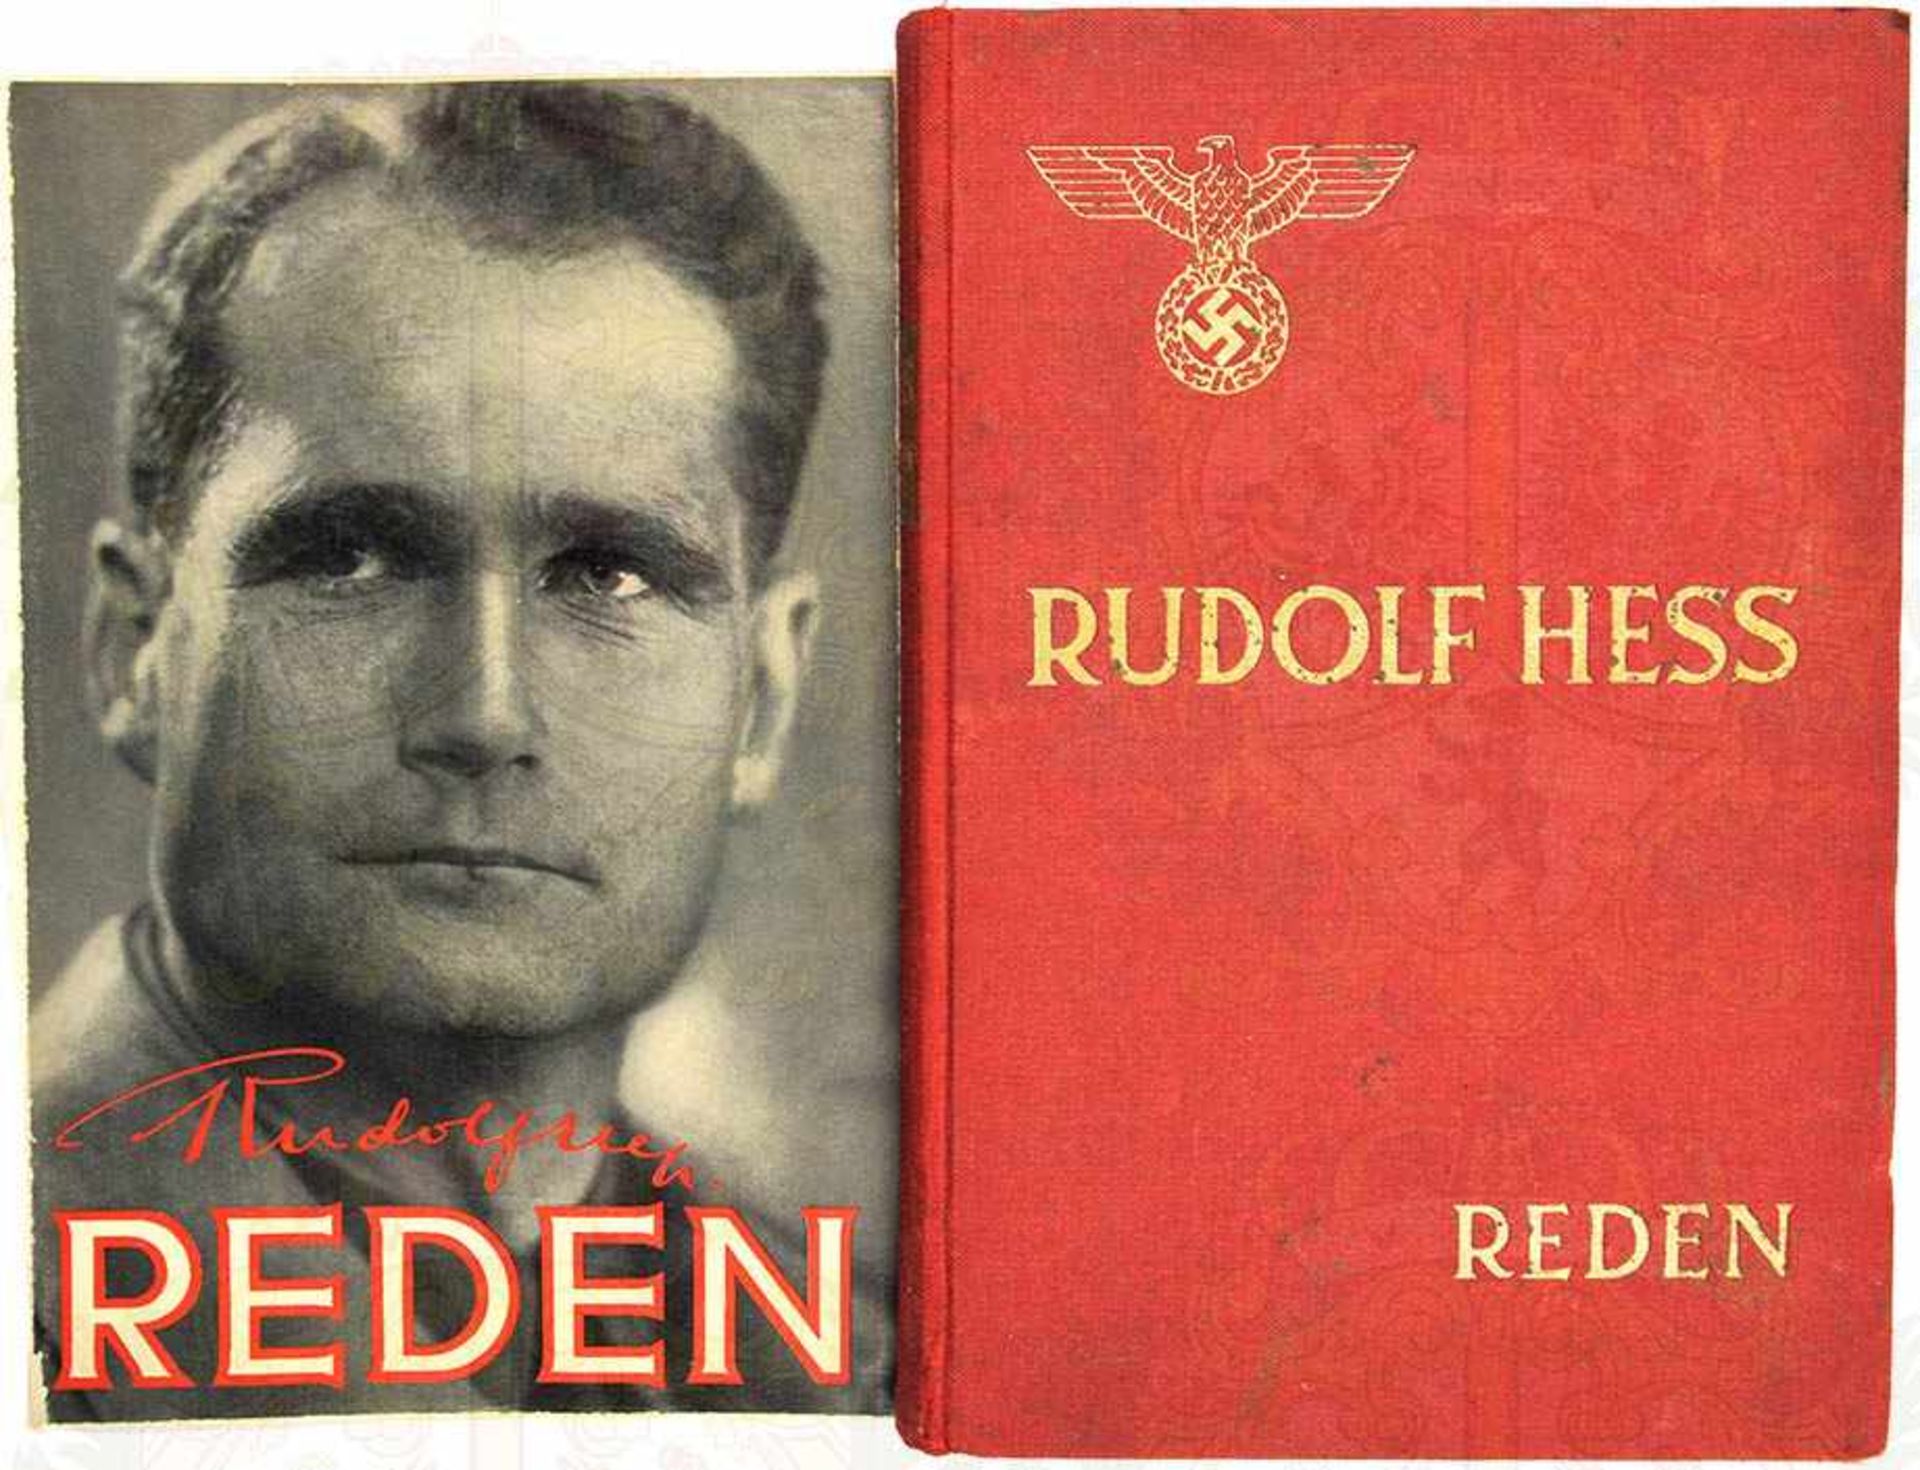 RUDOLF HEß REDEN, Eher-V. 1938, 272 S., gld.gepr. Ln., einmont. Titelbild d. SU, Bibliotheks-